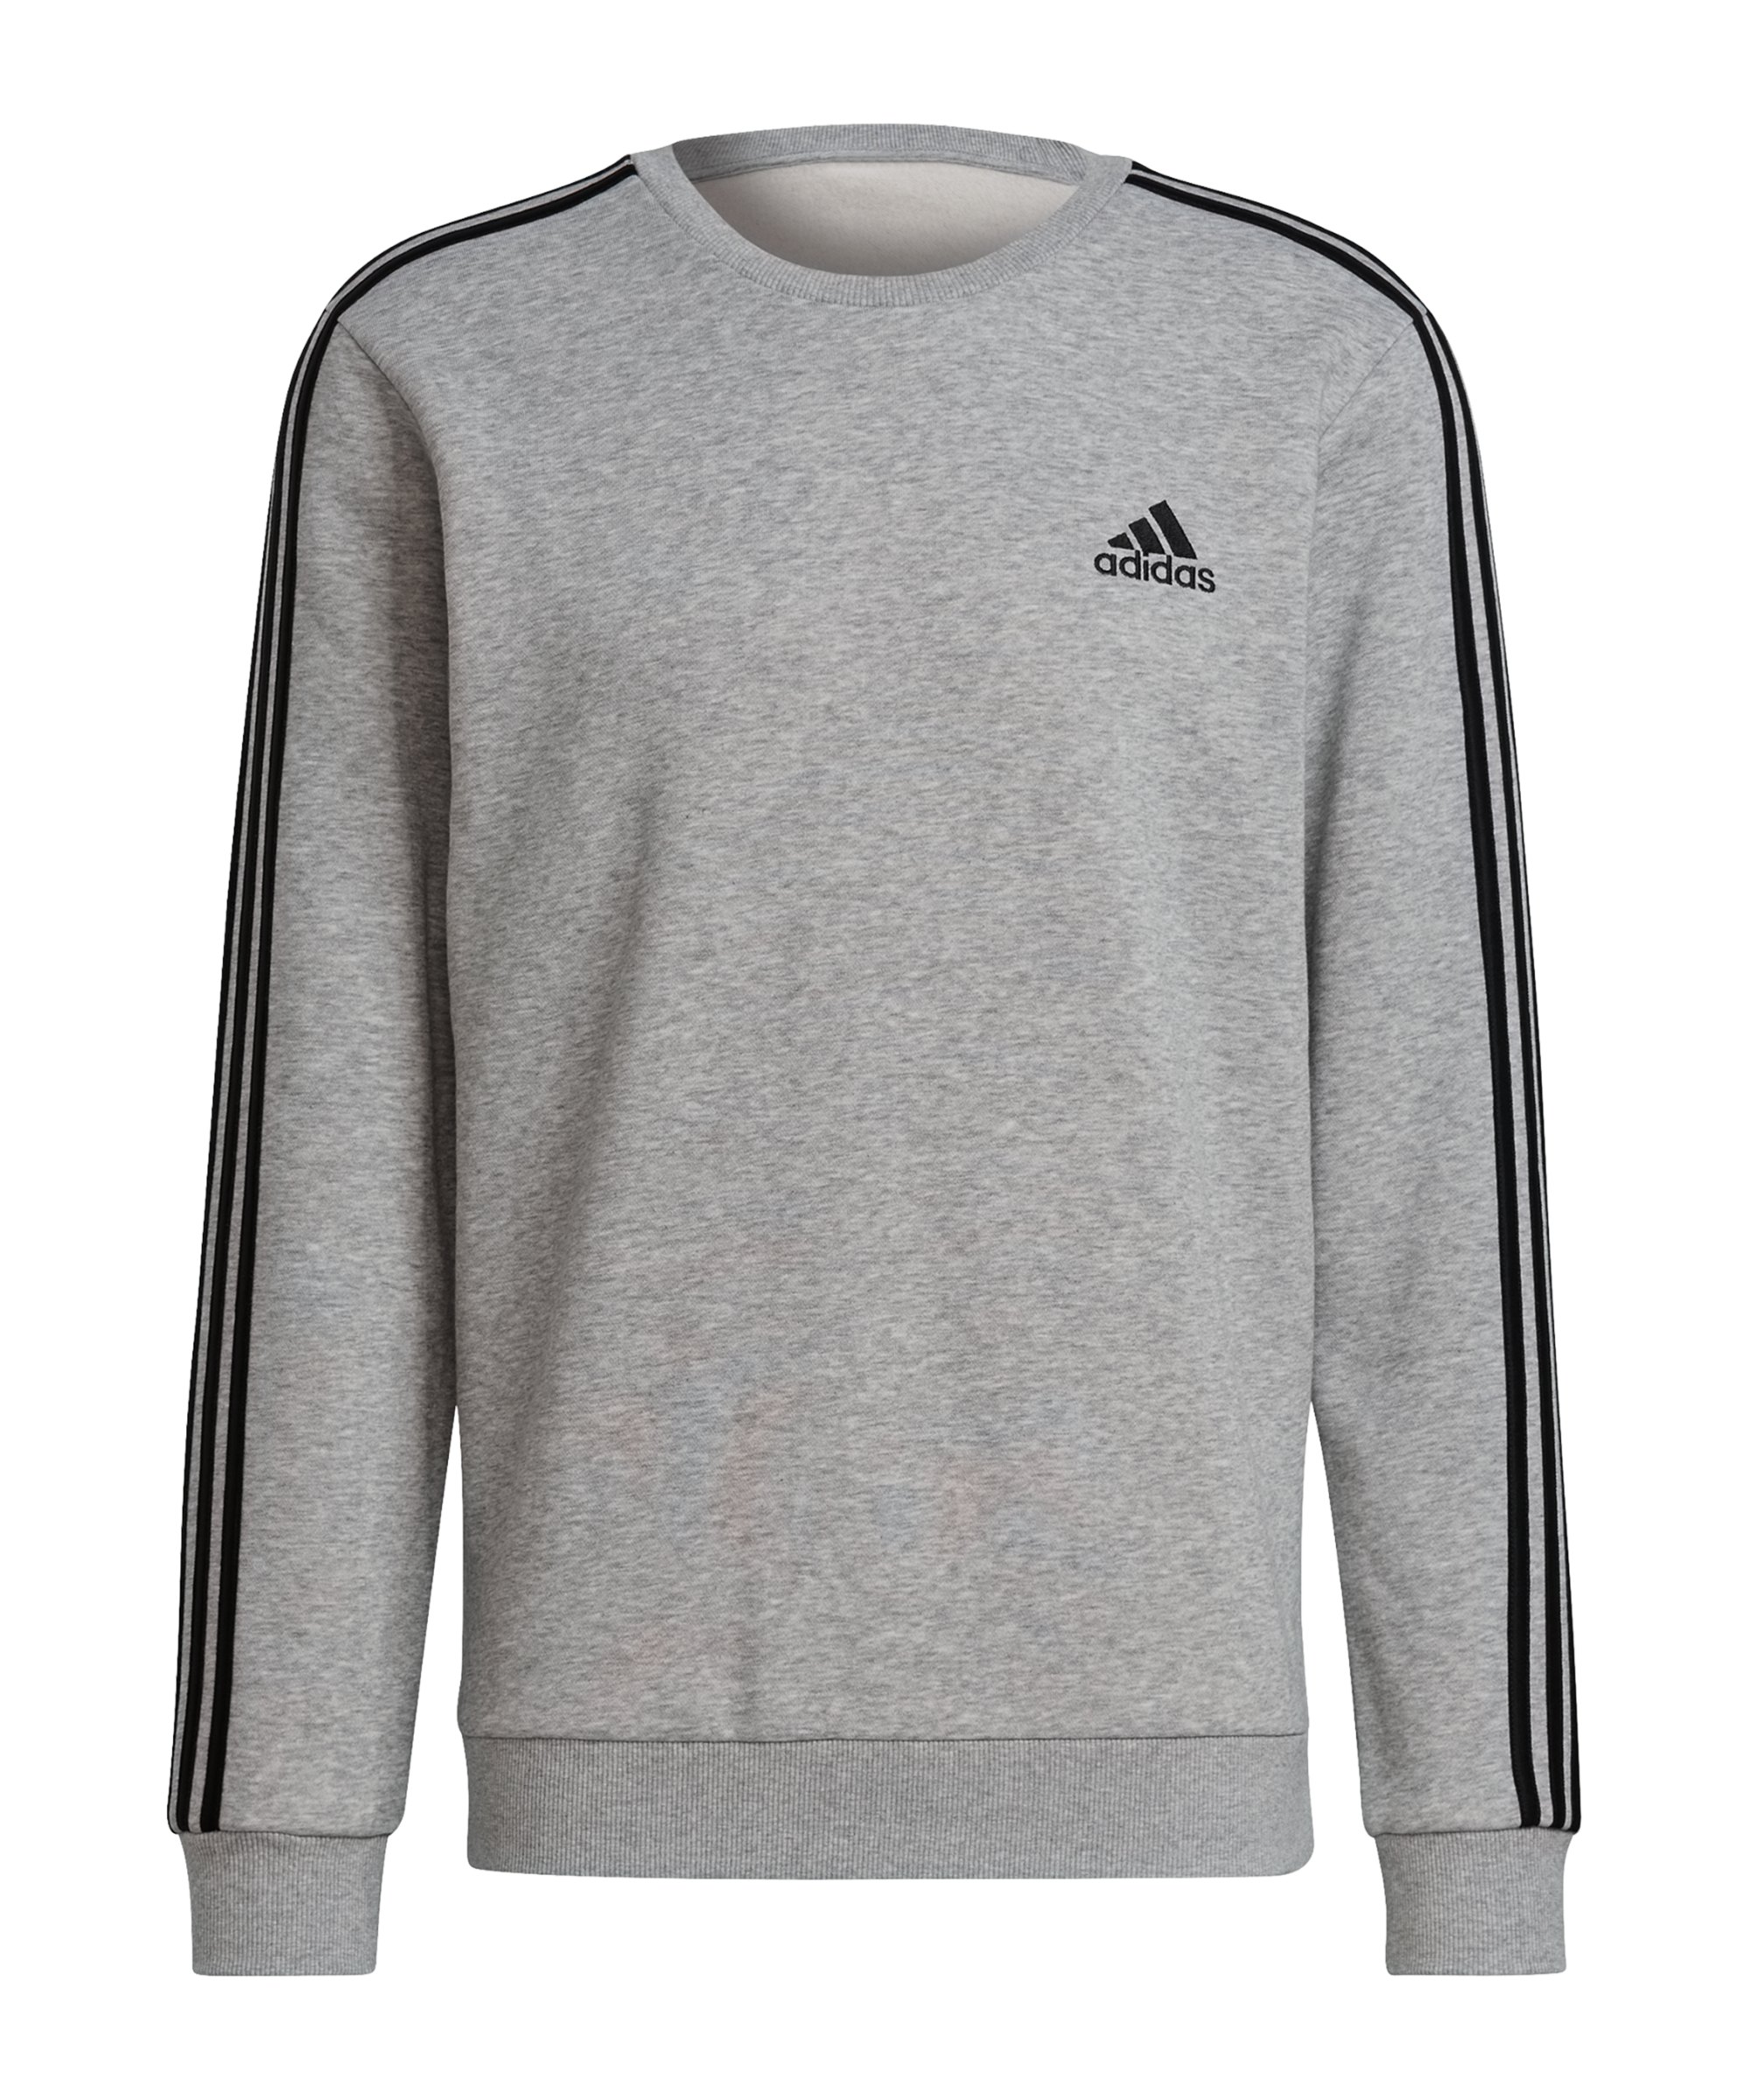 adidas Essentials Sweatshirt Grau Schwarz - grau